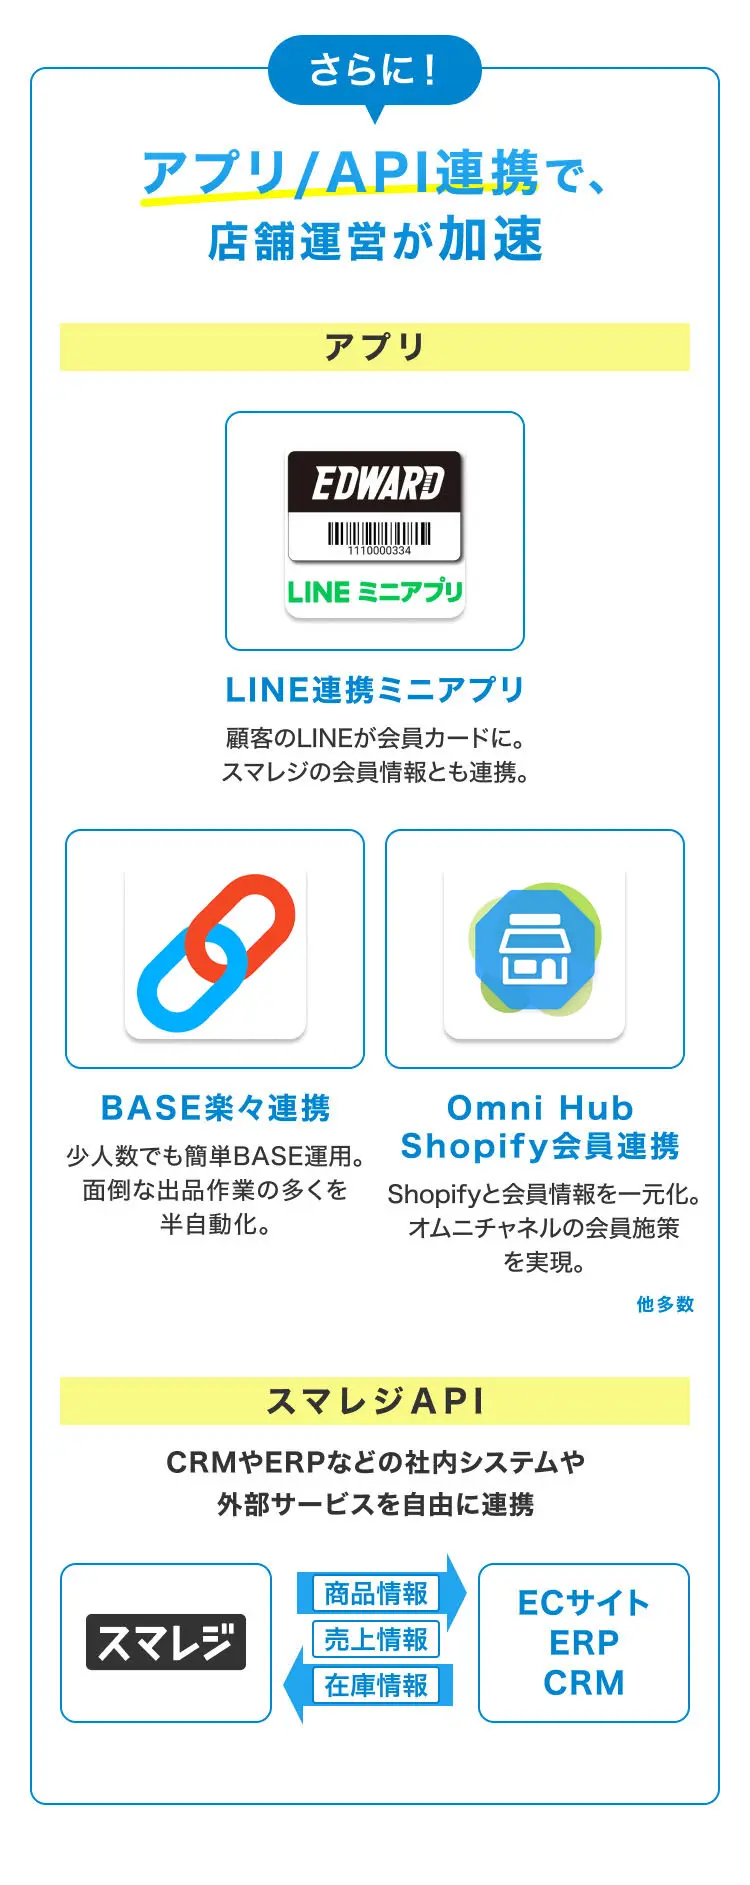 さらに！アプリ/API連携で、店舗運営が加速 アプリ LINE連携ミニアプリ 顧客のLINEが会員カードに。スマレジの会員情報とも連携。 BASE楽々連携 少人数でも簡単BASE運用。面倒な出品作業の多くを半自動化。 Omni Hub Shopify会員連携 Shopifyと会員情報を一元化。オムニチャネルの会員施策を実現。他多数 スマレジAPI CRMやERPなどの社内システムや外部サービスを自由に連携